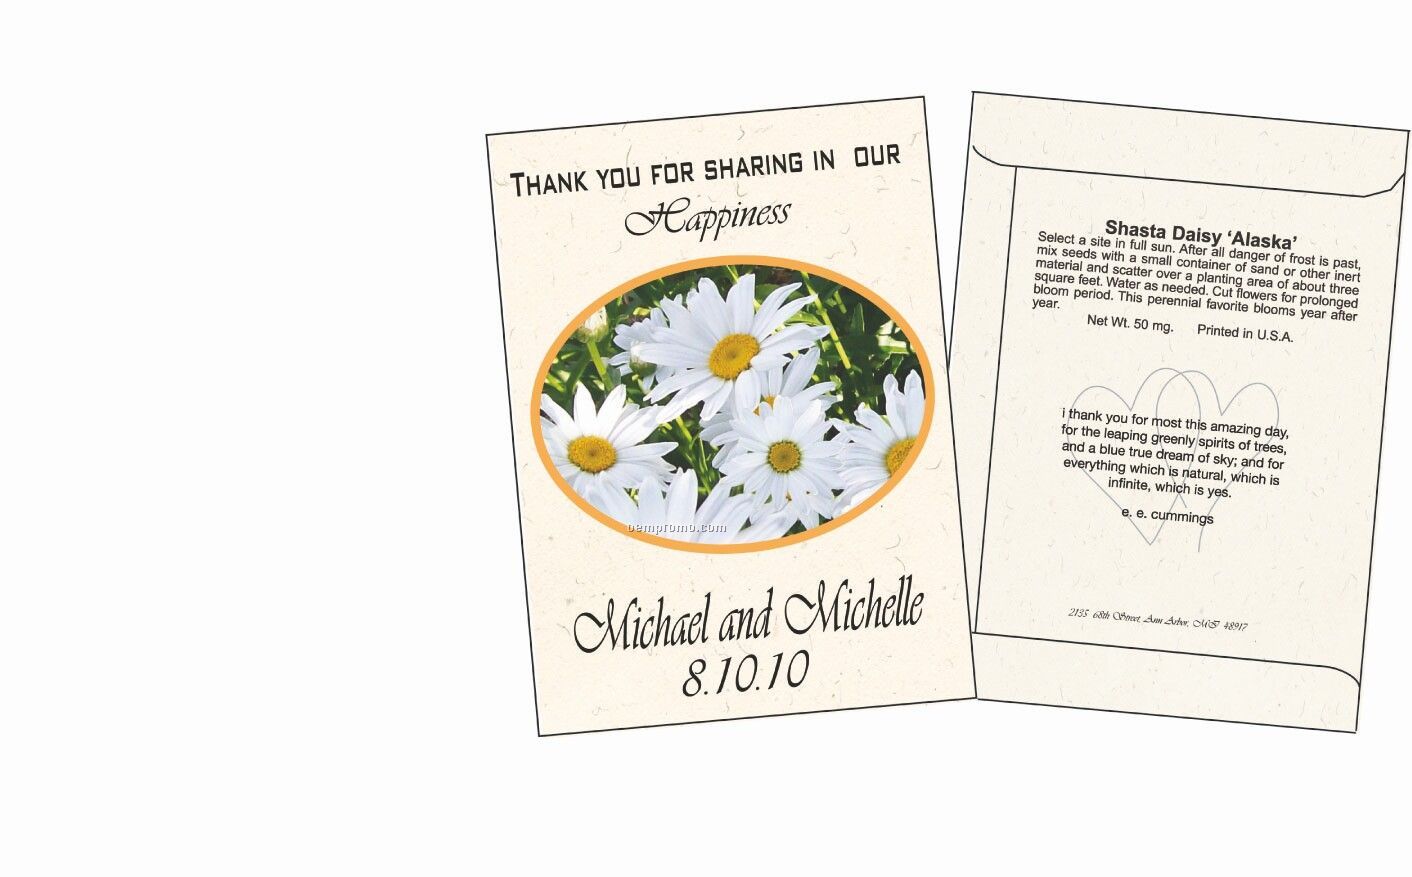 Shasta Daisy/ Alaska Flower Seed Packet (1 Color)